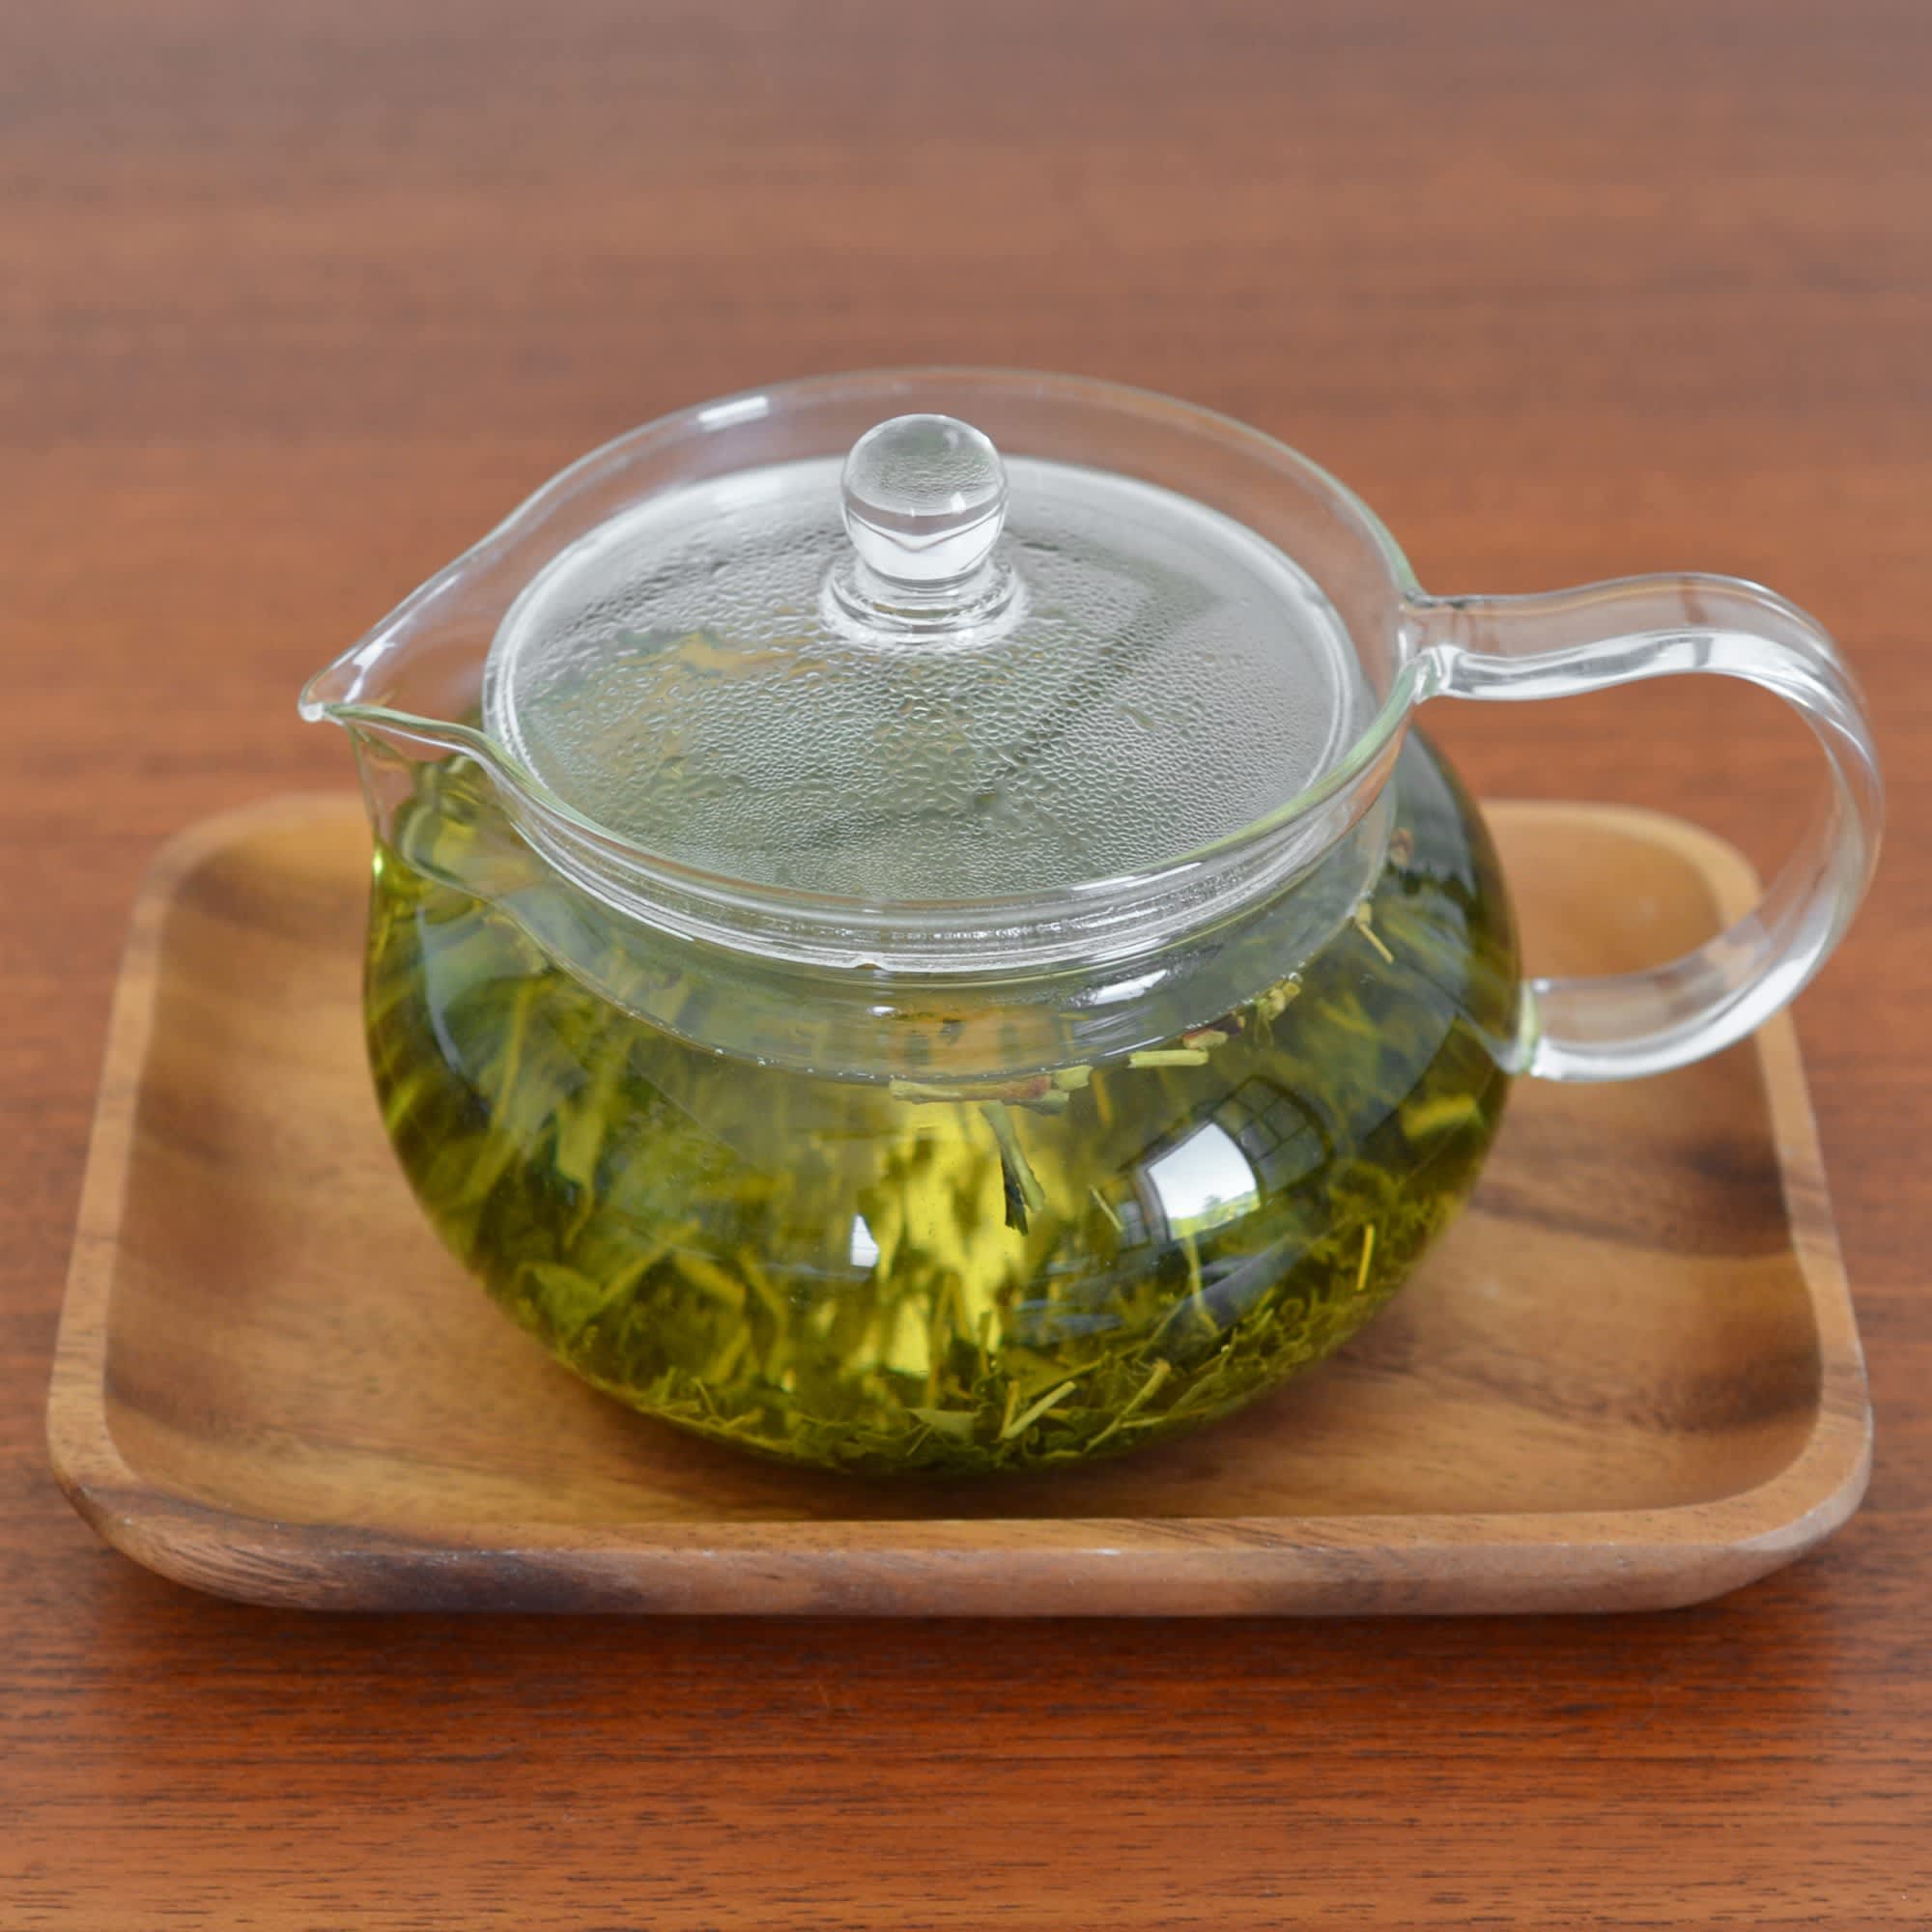 green tea maker kettle